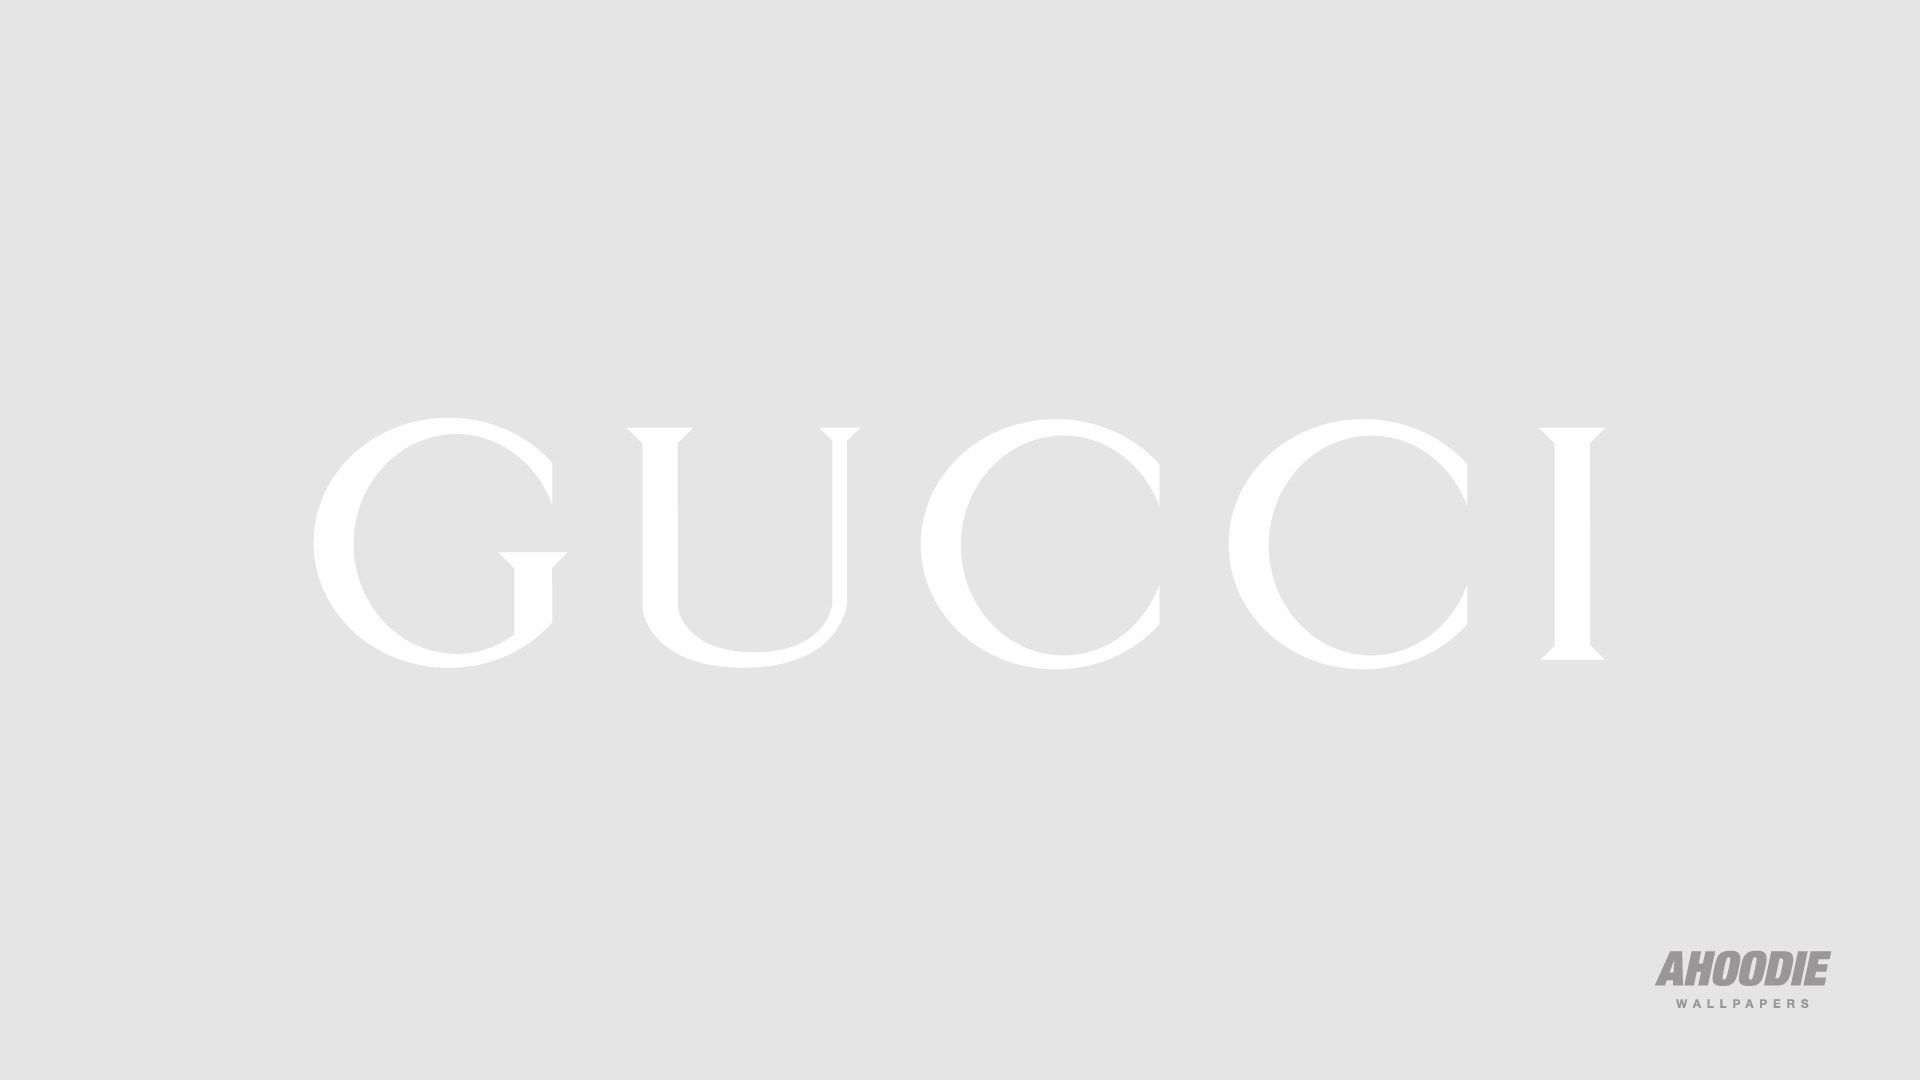 white gucci logo